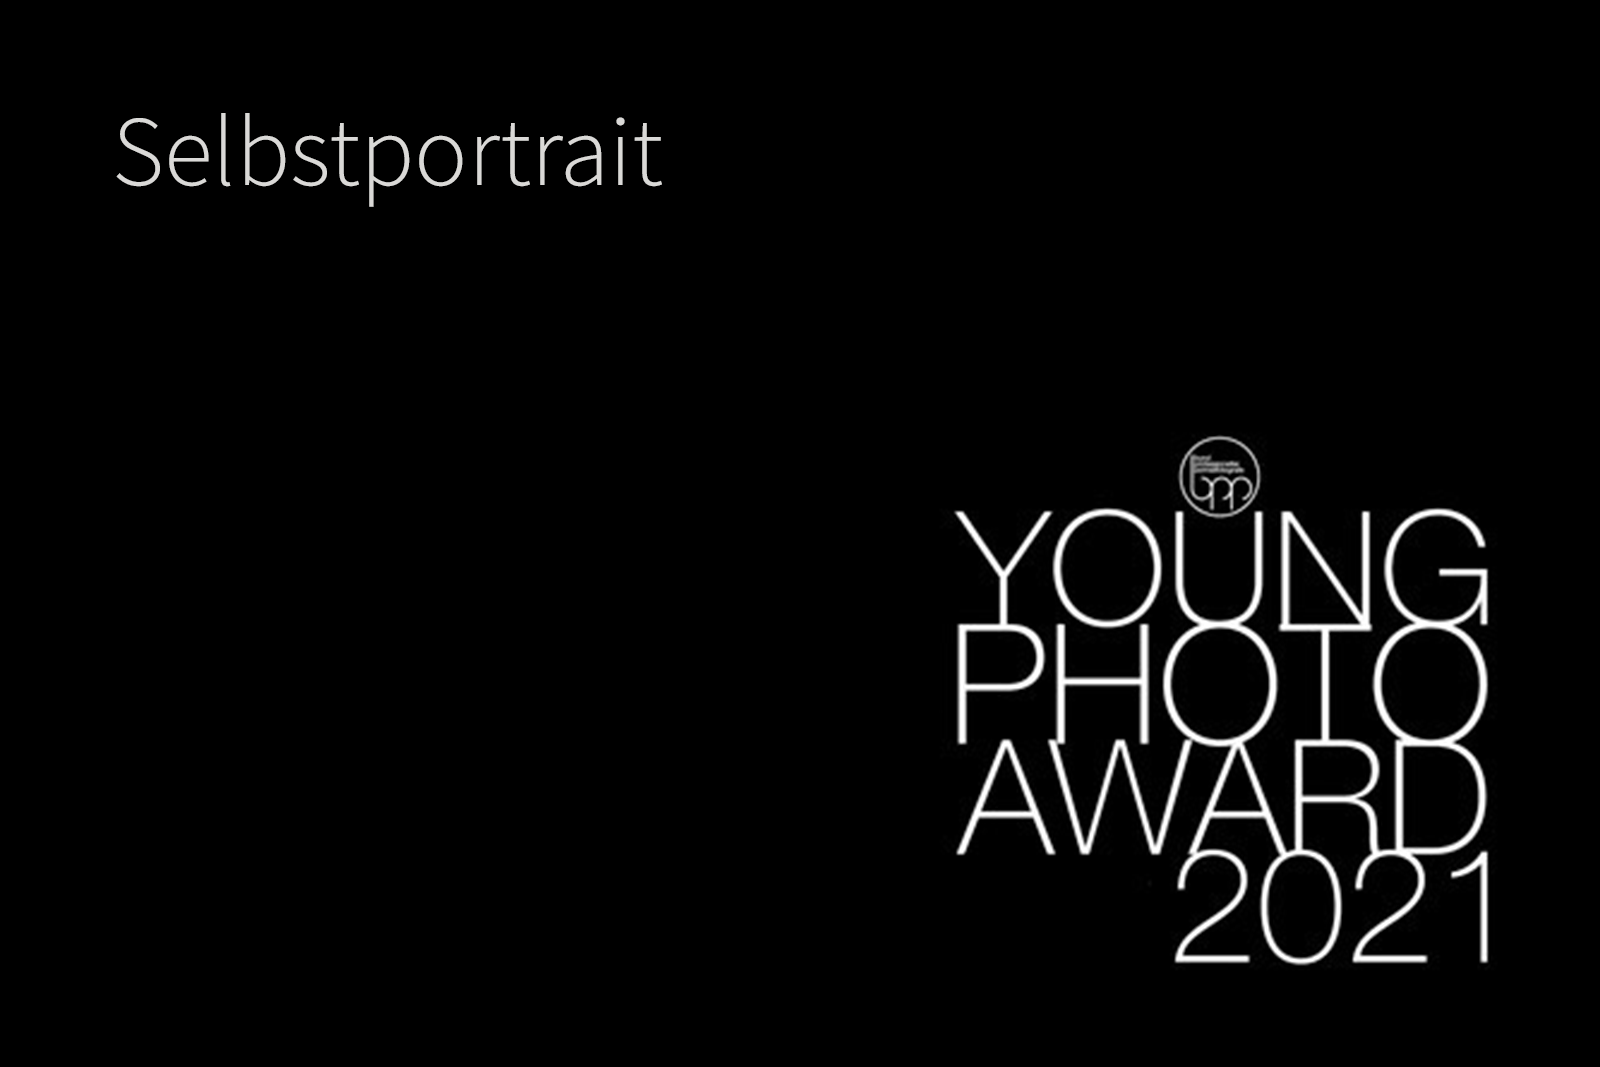 Young Photo Award 2021